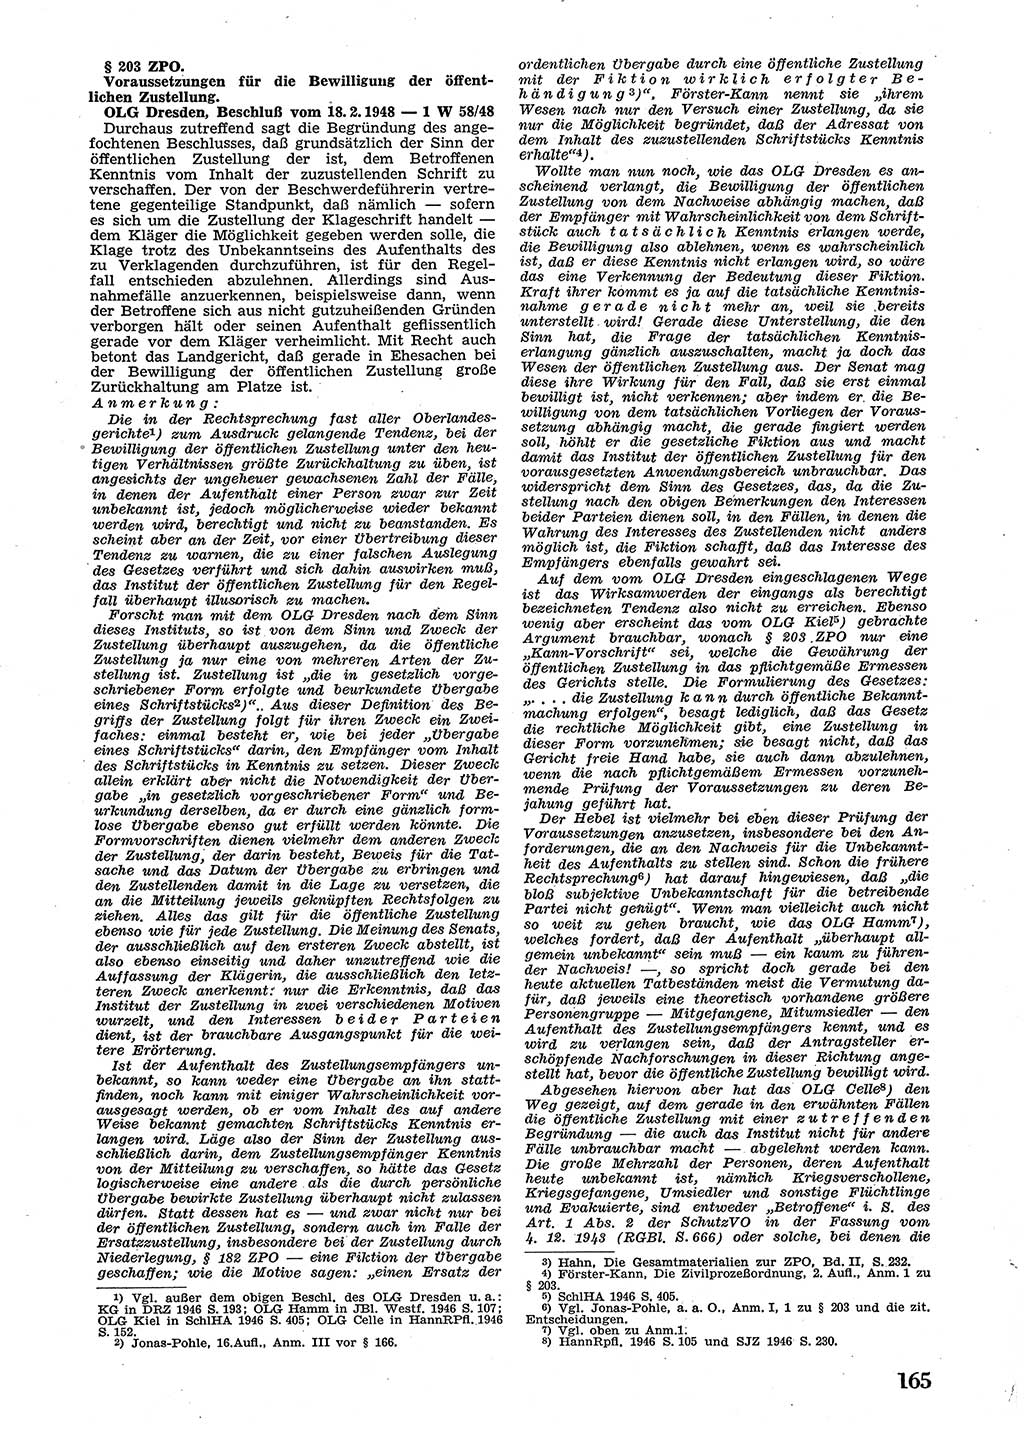 Neue Justiz (NJ), Zeitschrift für Recht und Rechtswissenschaft [Sowjetische Besatzungszone (SBZ) Deutschland], 2. Jahrgang 1948, Seite 165 (NJ SBZ Dtl. 1948, S. 165)